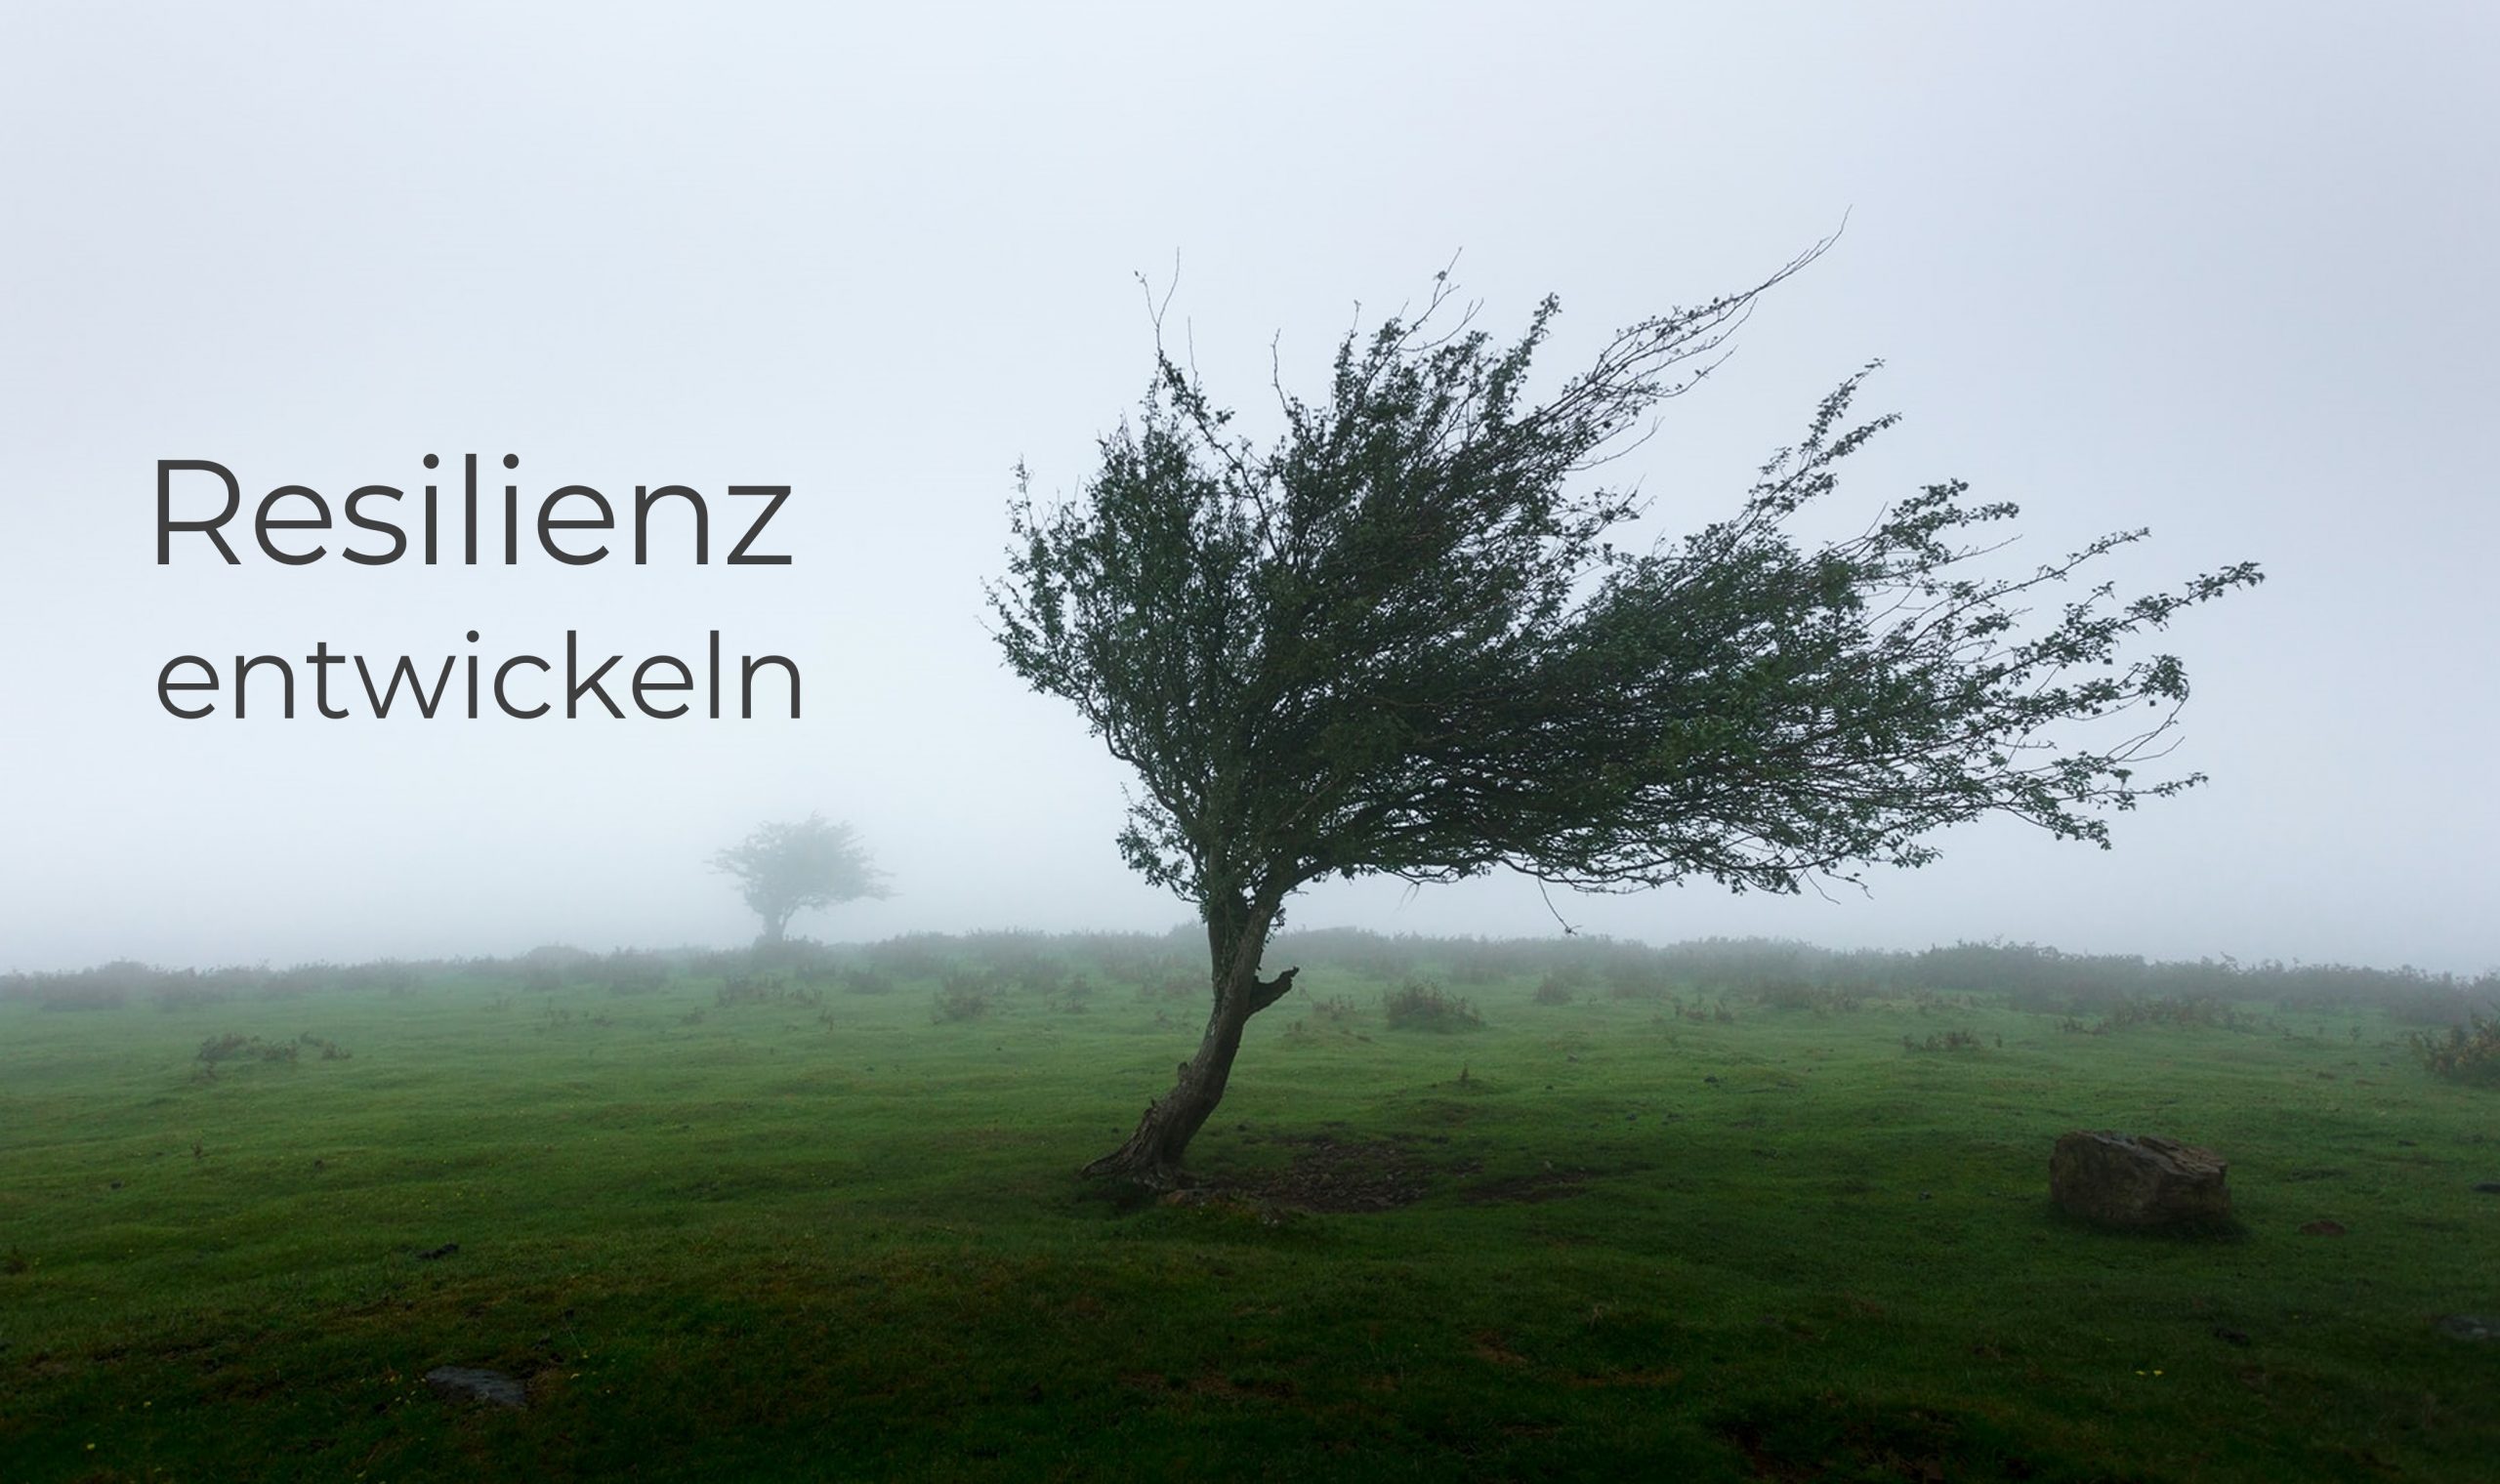 Baum im Wind mit Text "Stark durch Krisen" - Marc Wallert